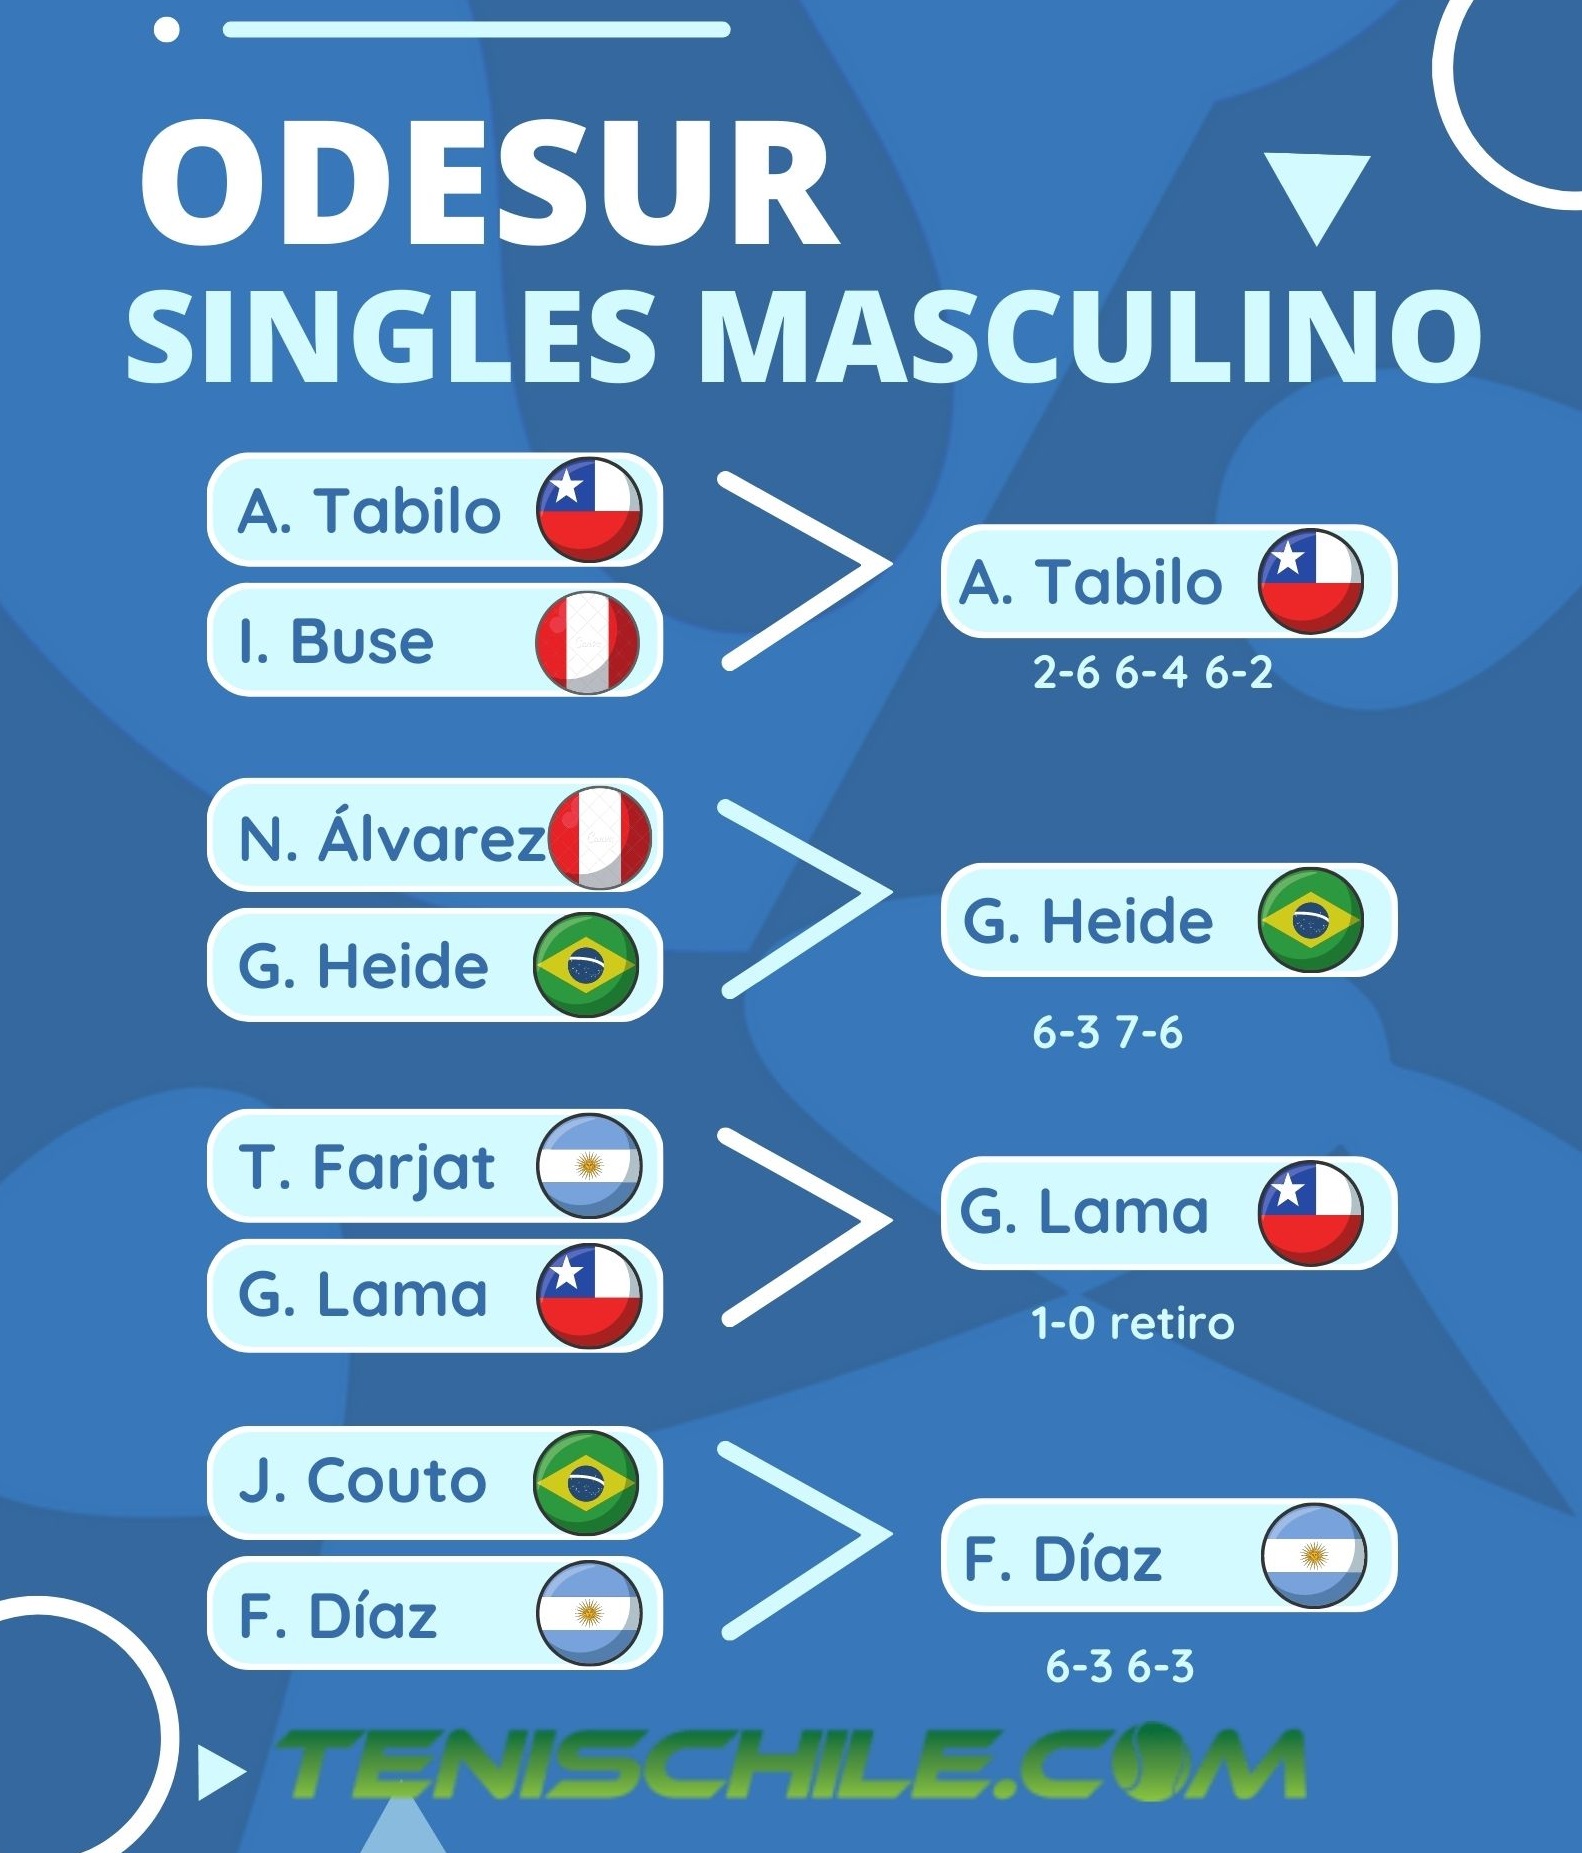 Chile asegura bronce en el tenis masculino de los Odesur